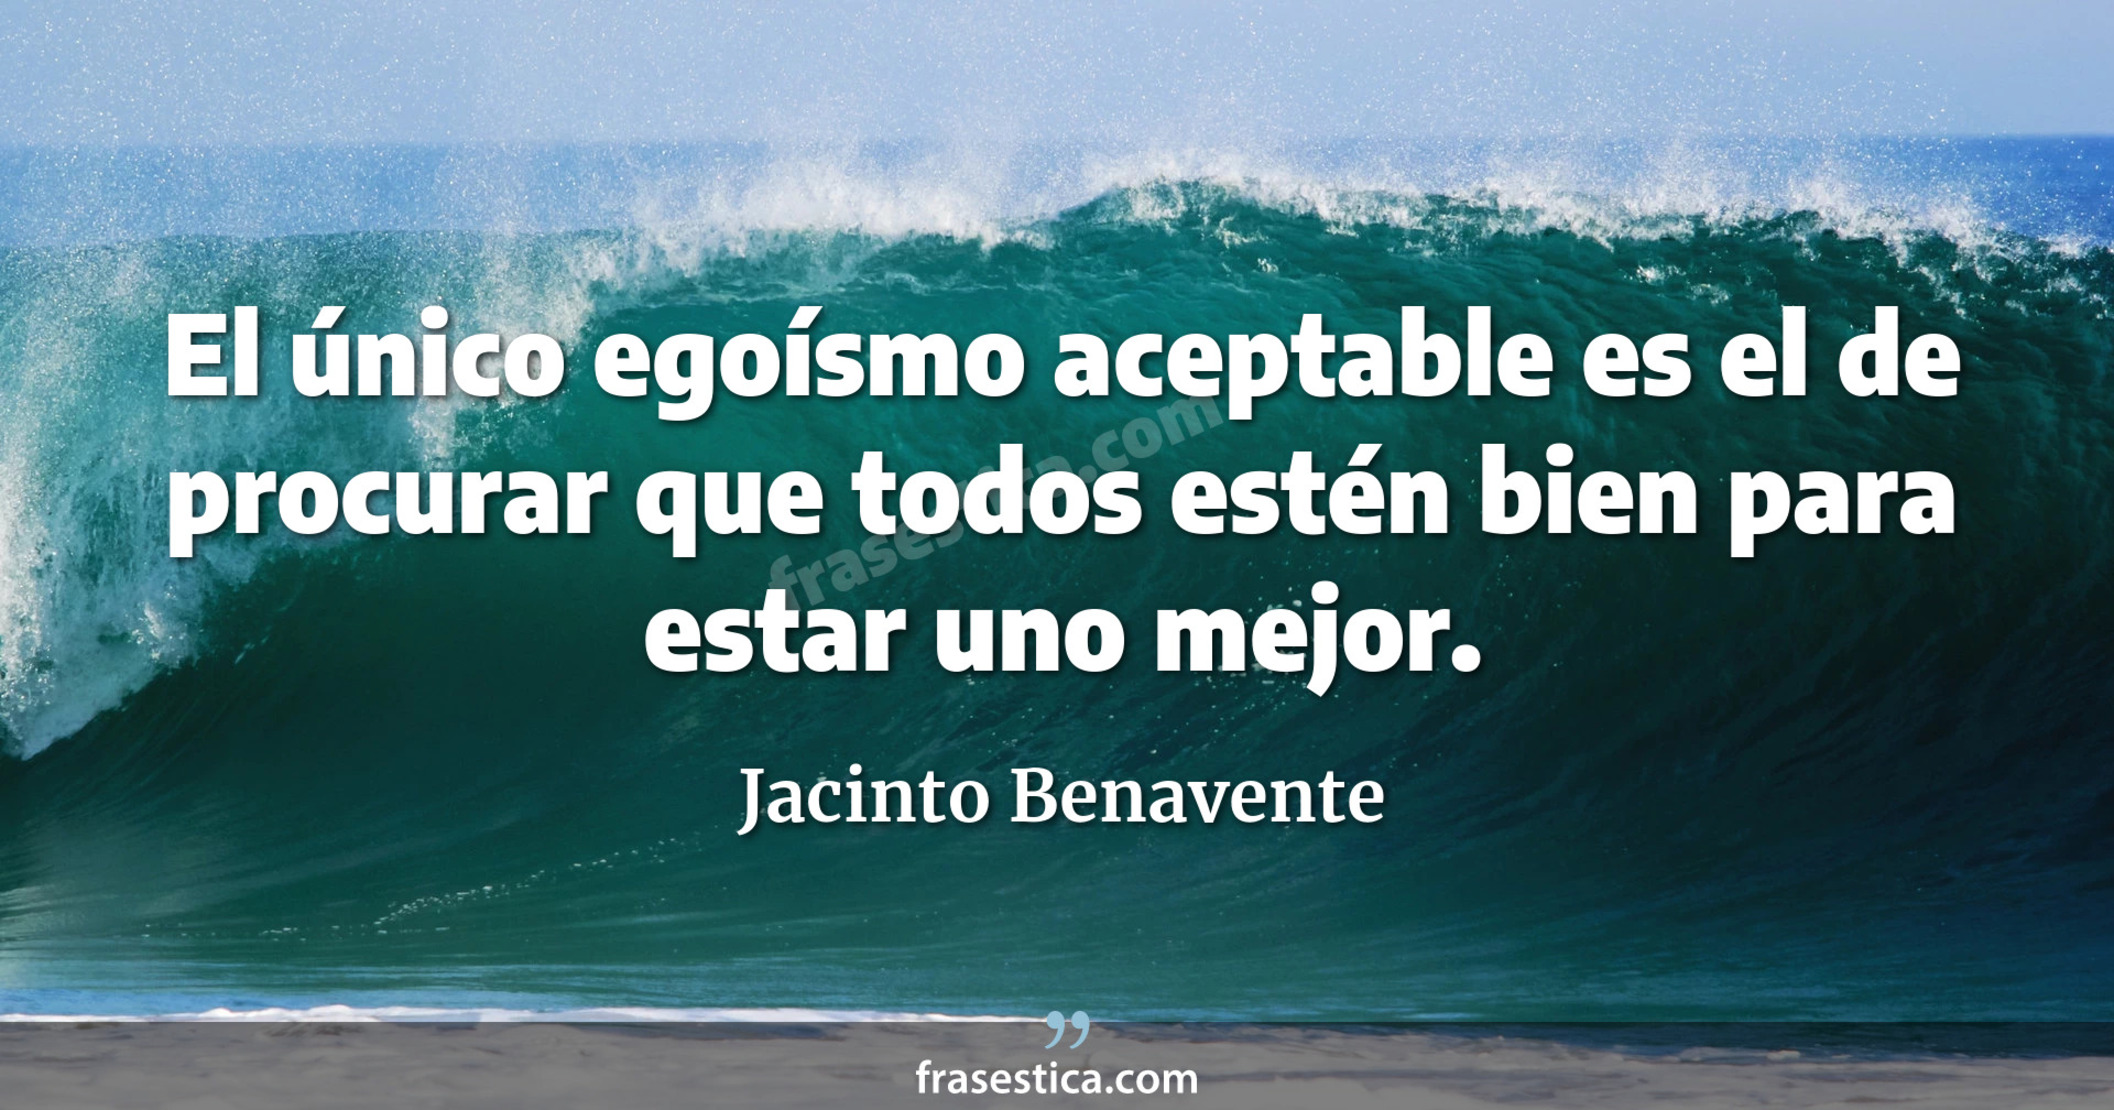 El único egoísmo aceptable es el de procurar que todos estén bien para estar uno mejor. - Jacinto Benavente